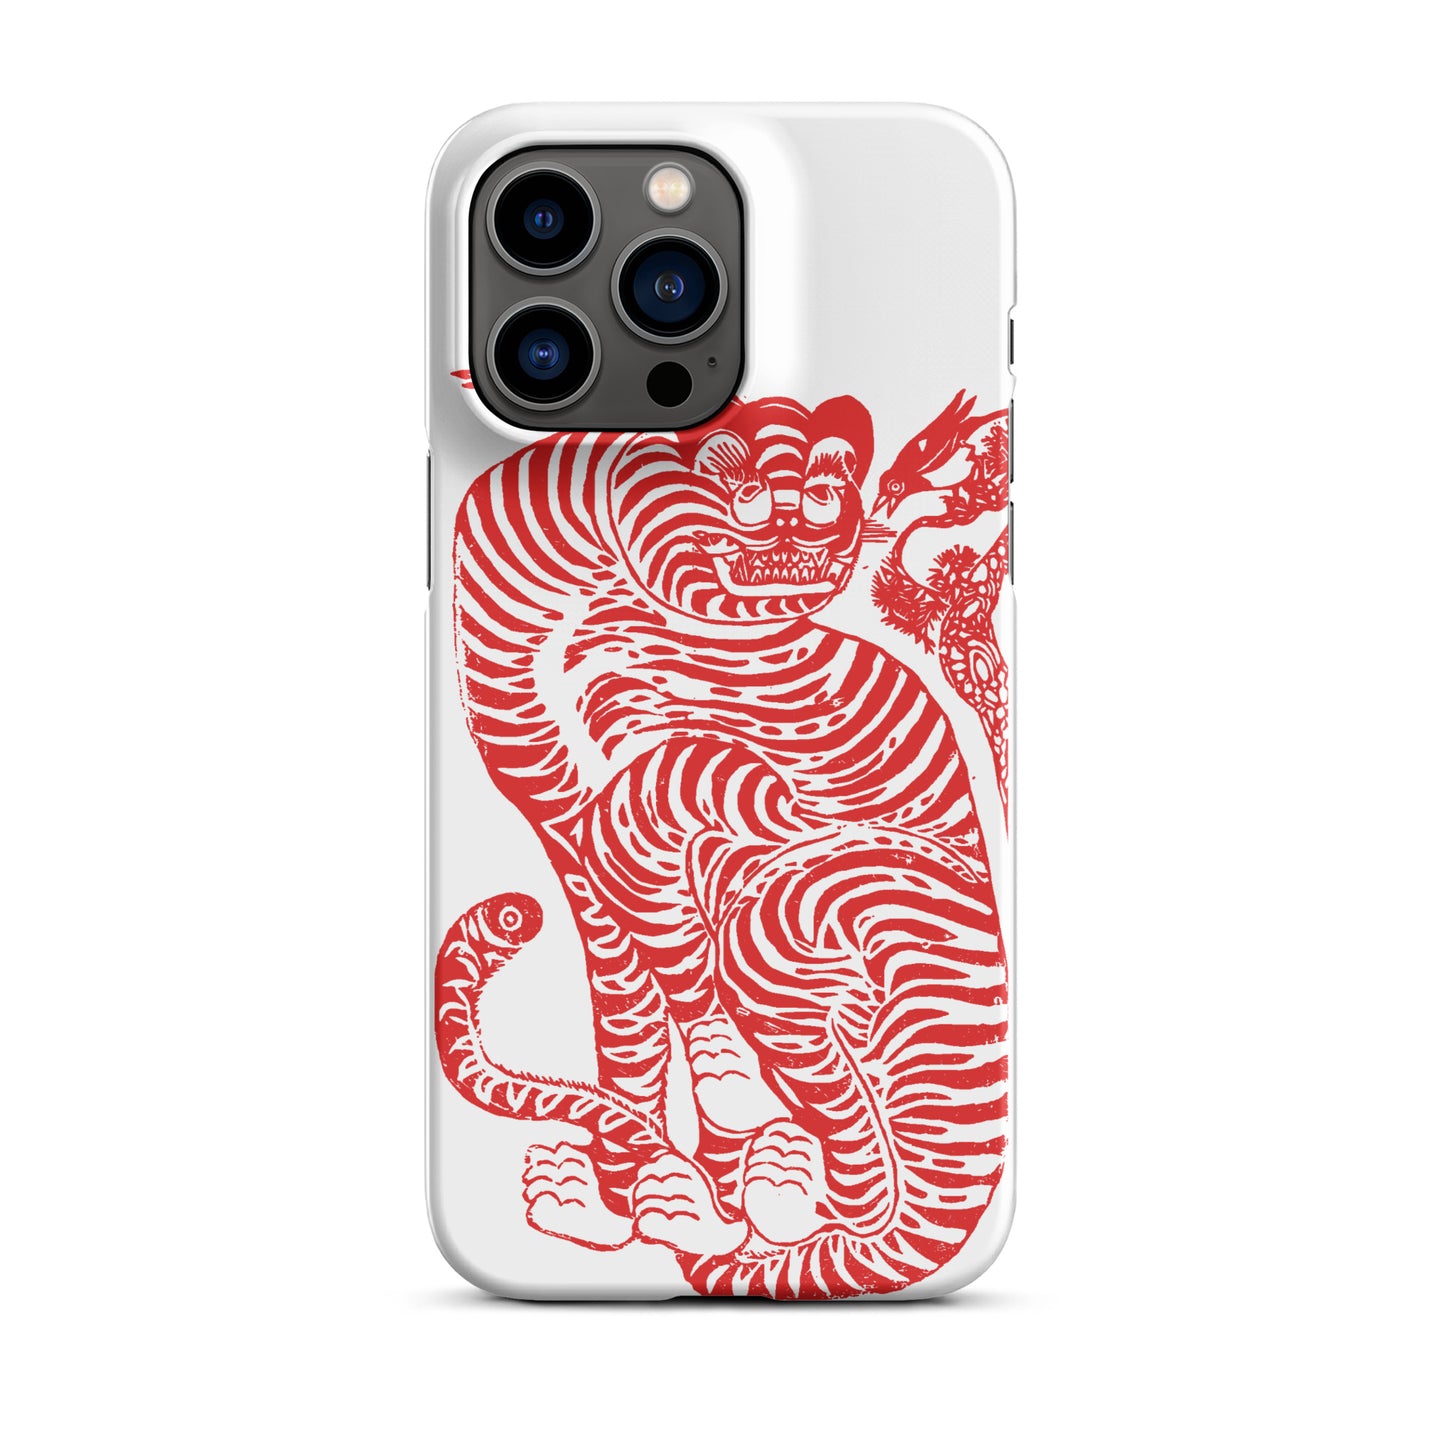 Die Tiger-Hülle für das iPhone®